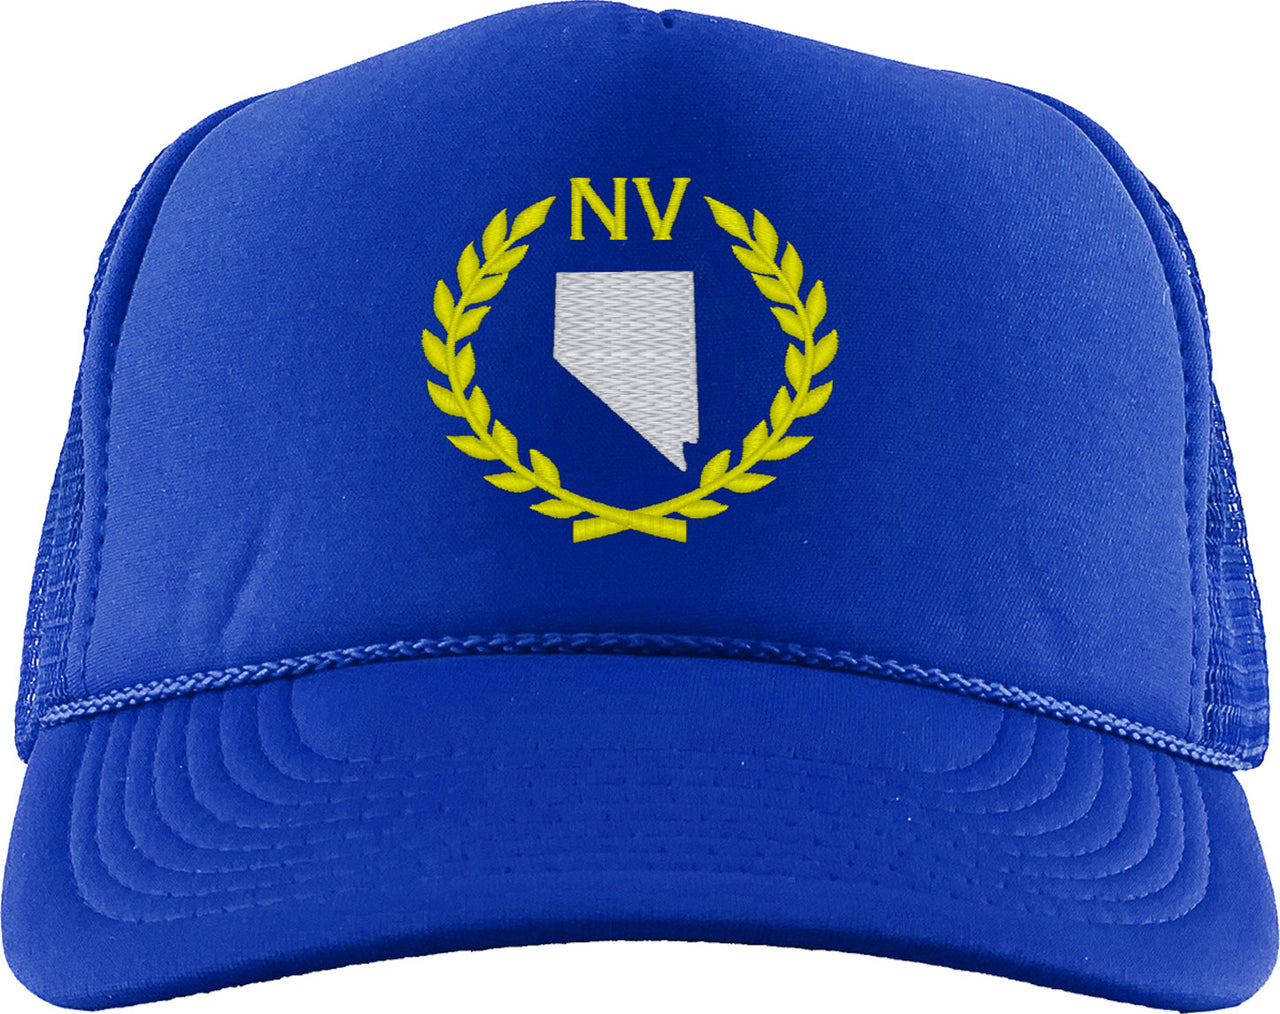 Nevada State Foam Trucker Hat